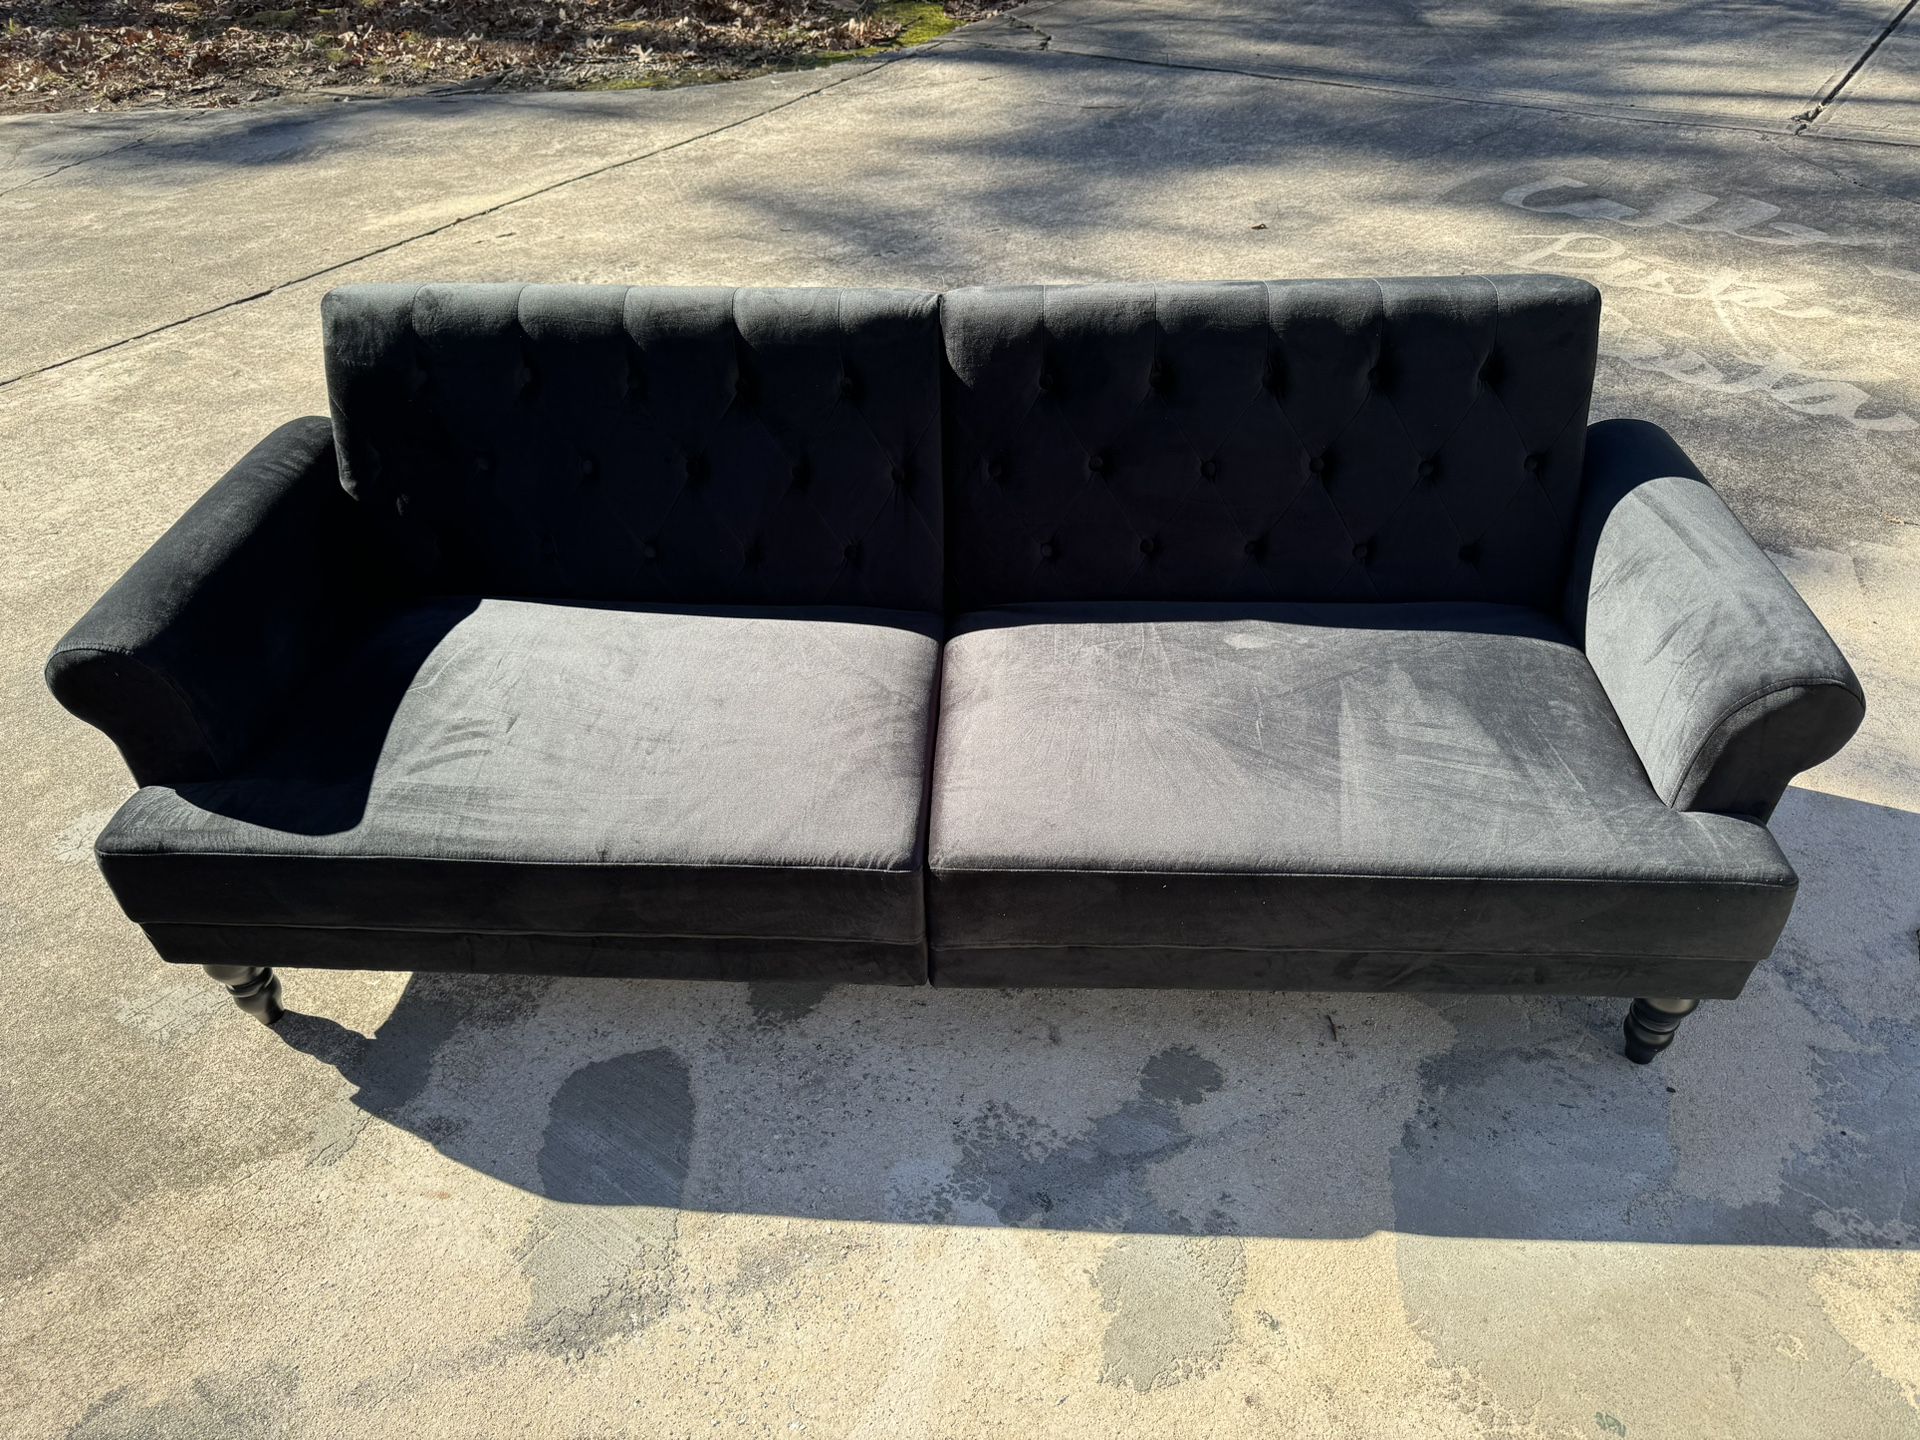 NEW - Vintage Style Futon/Sleeping Sofa - Black 